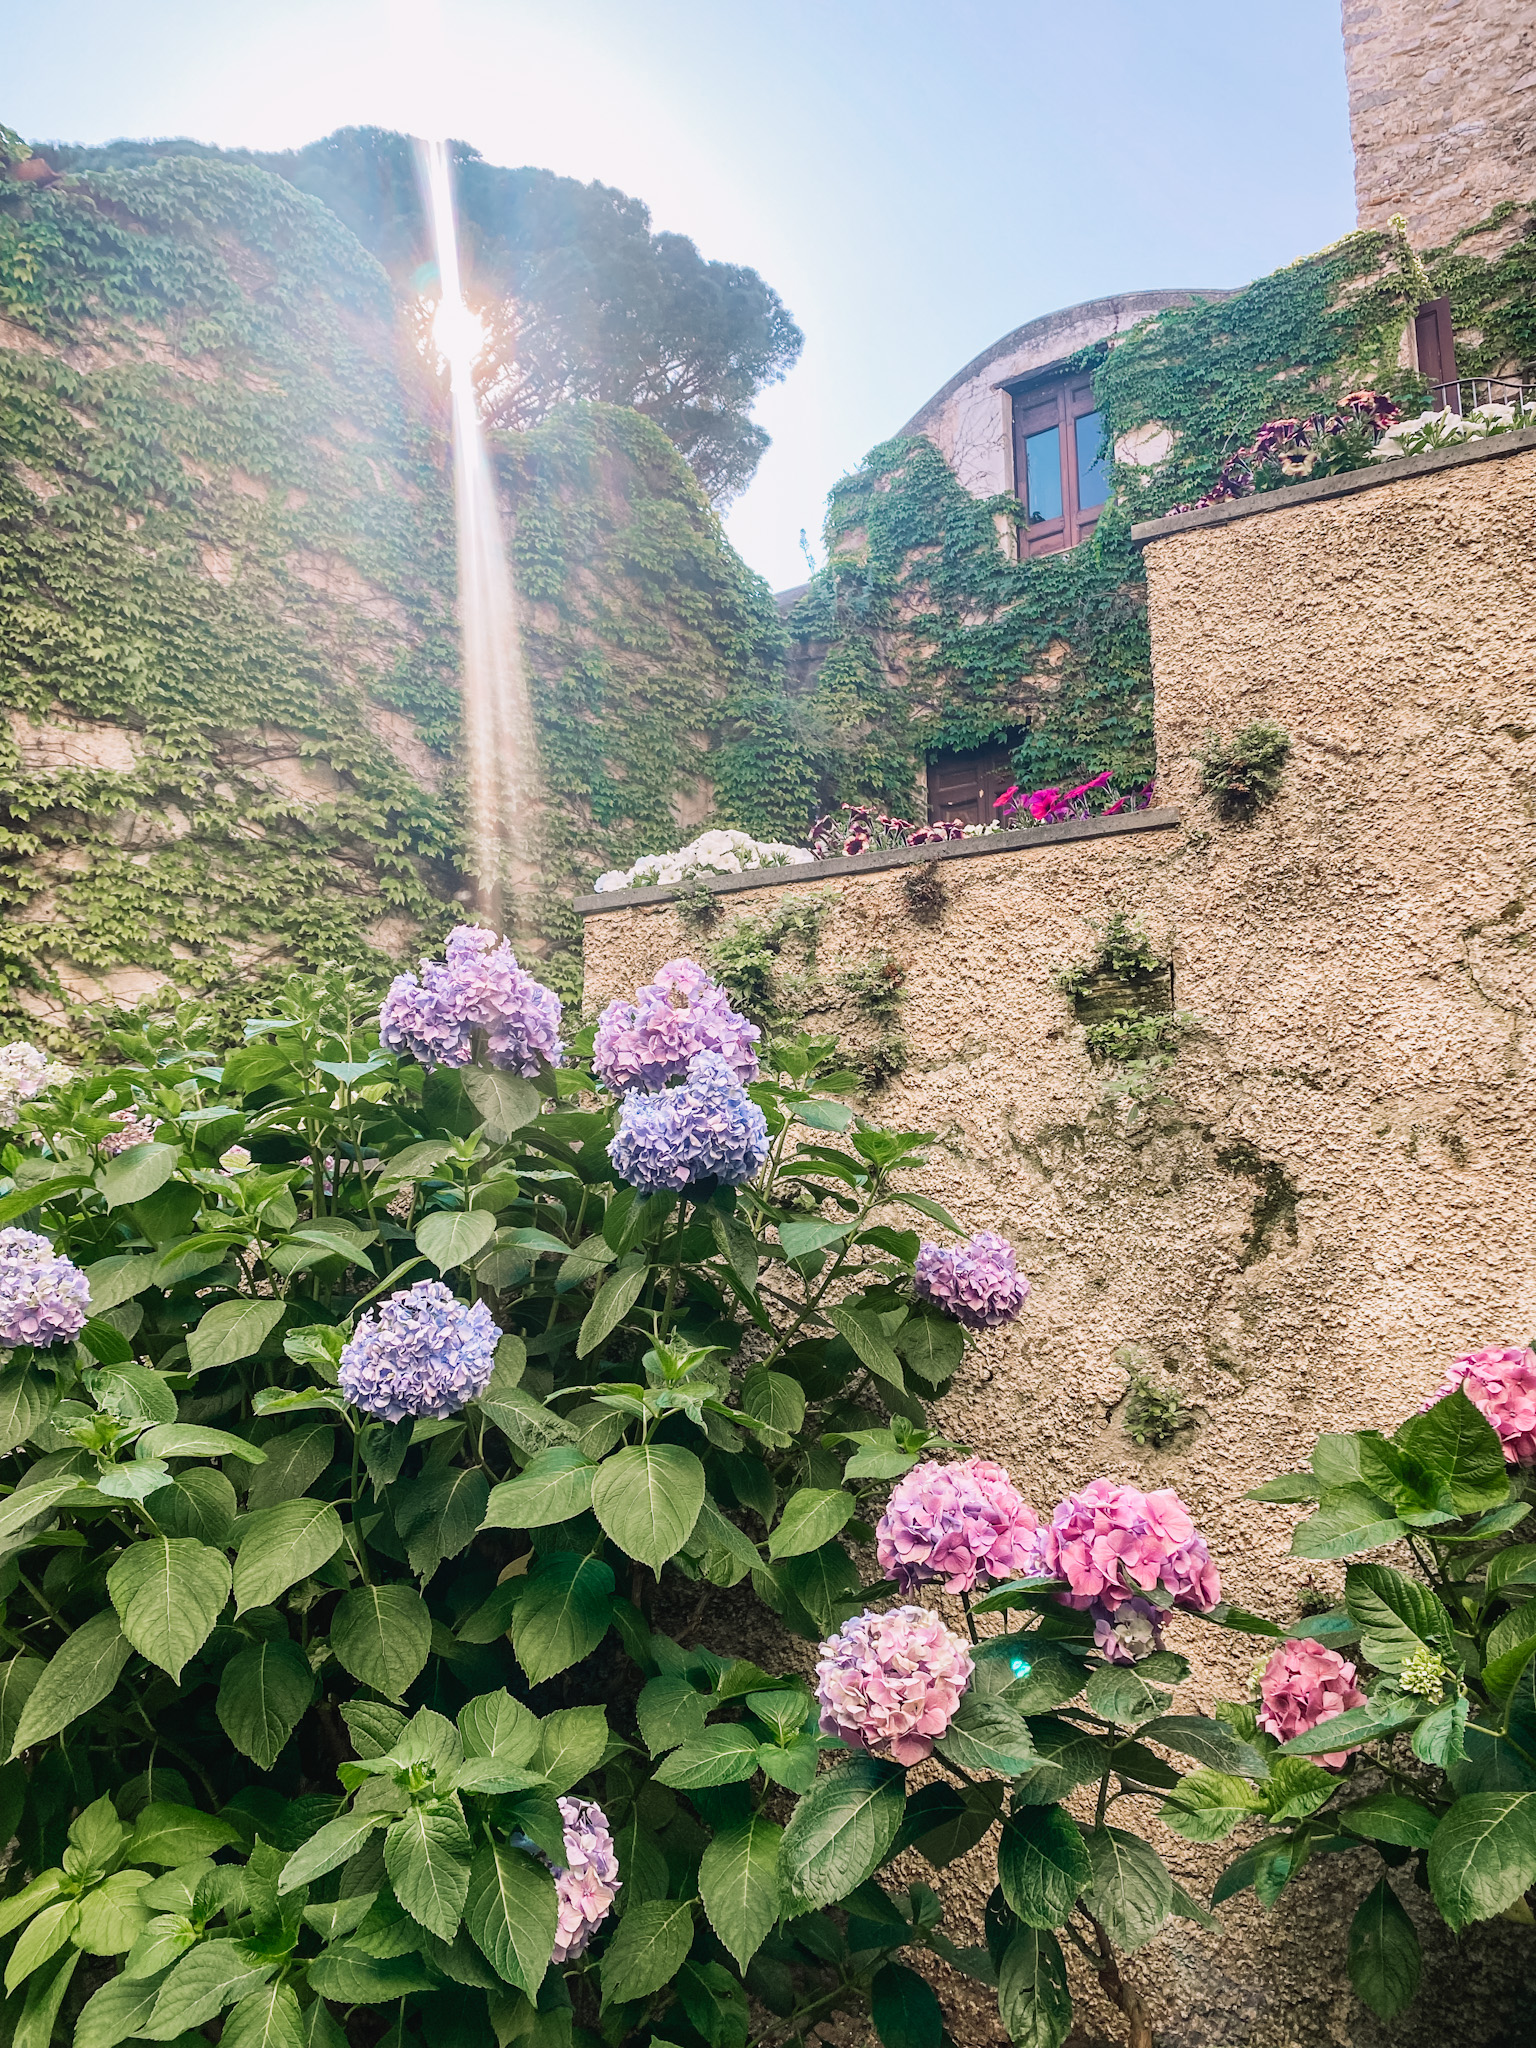 Villa Rufolo | Amalfi Coast Travel Guide